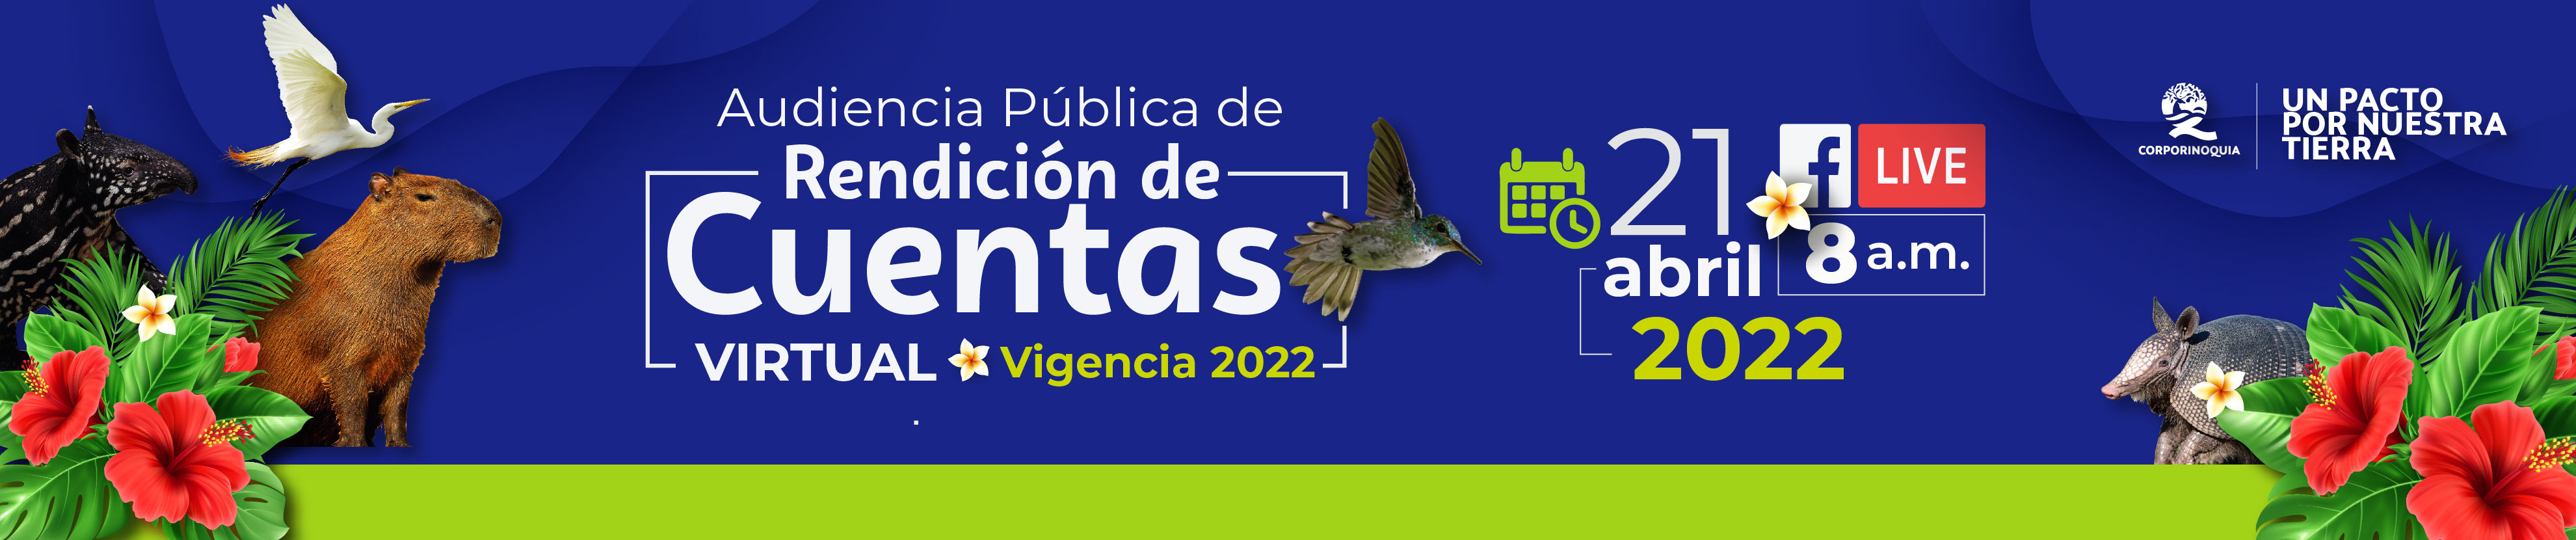 AUDIENCIA PUBLICA DE RENDICIÓN DE CUENTAS Y SEGUIMIENTO AL PLAN DE ACCIÓN INSTITUCIONAL 2020 - 2023 “UN PACTO POR NUESTRA TIERRA” VIGENCIA 2022